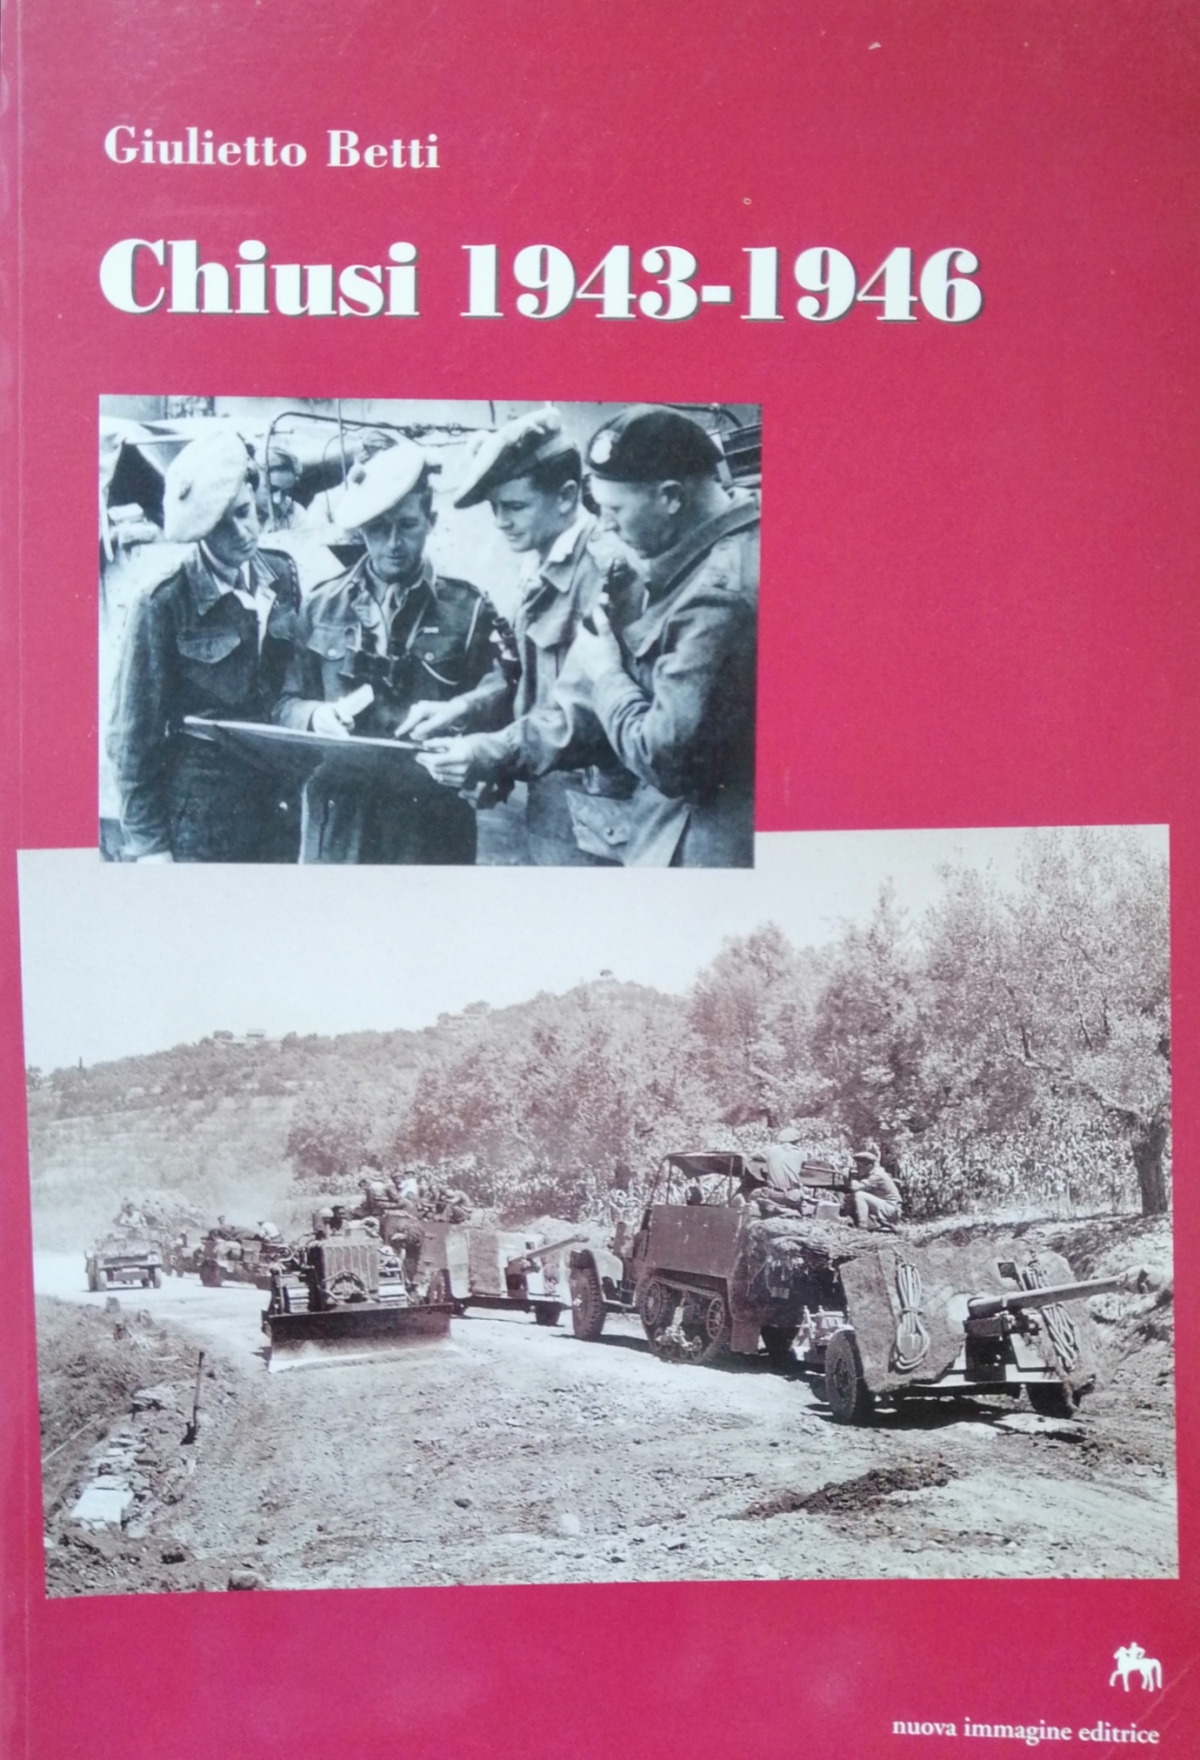 Chiusi 1943-1946